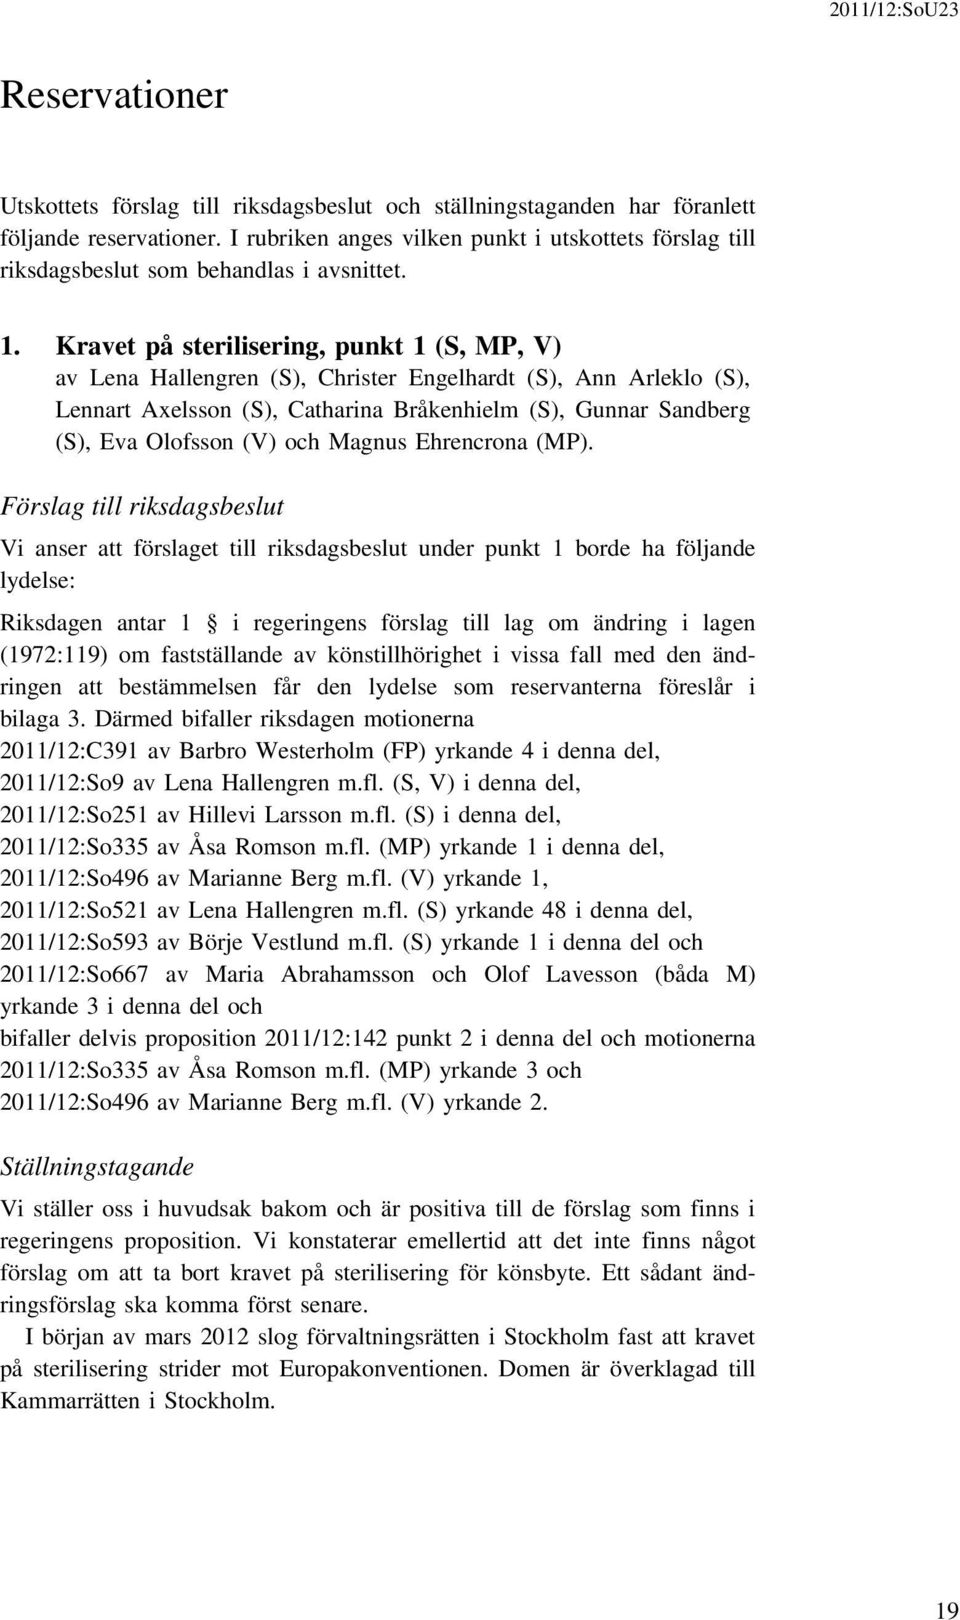 Kravet på sterilisering, punkt 1 (S, MP, V) av Lena Hallengren (S), Christer Engelhardt (S), Ann Arleklo (S), Lennart Axelsson (S), Catharina Bråkenhielm (S), Gunnar Sandberg (S), Eva Olofsson (V)